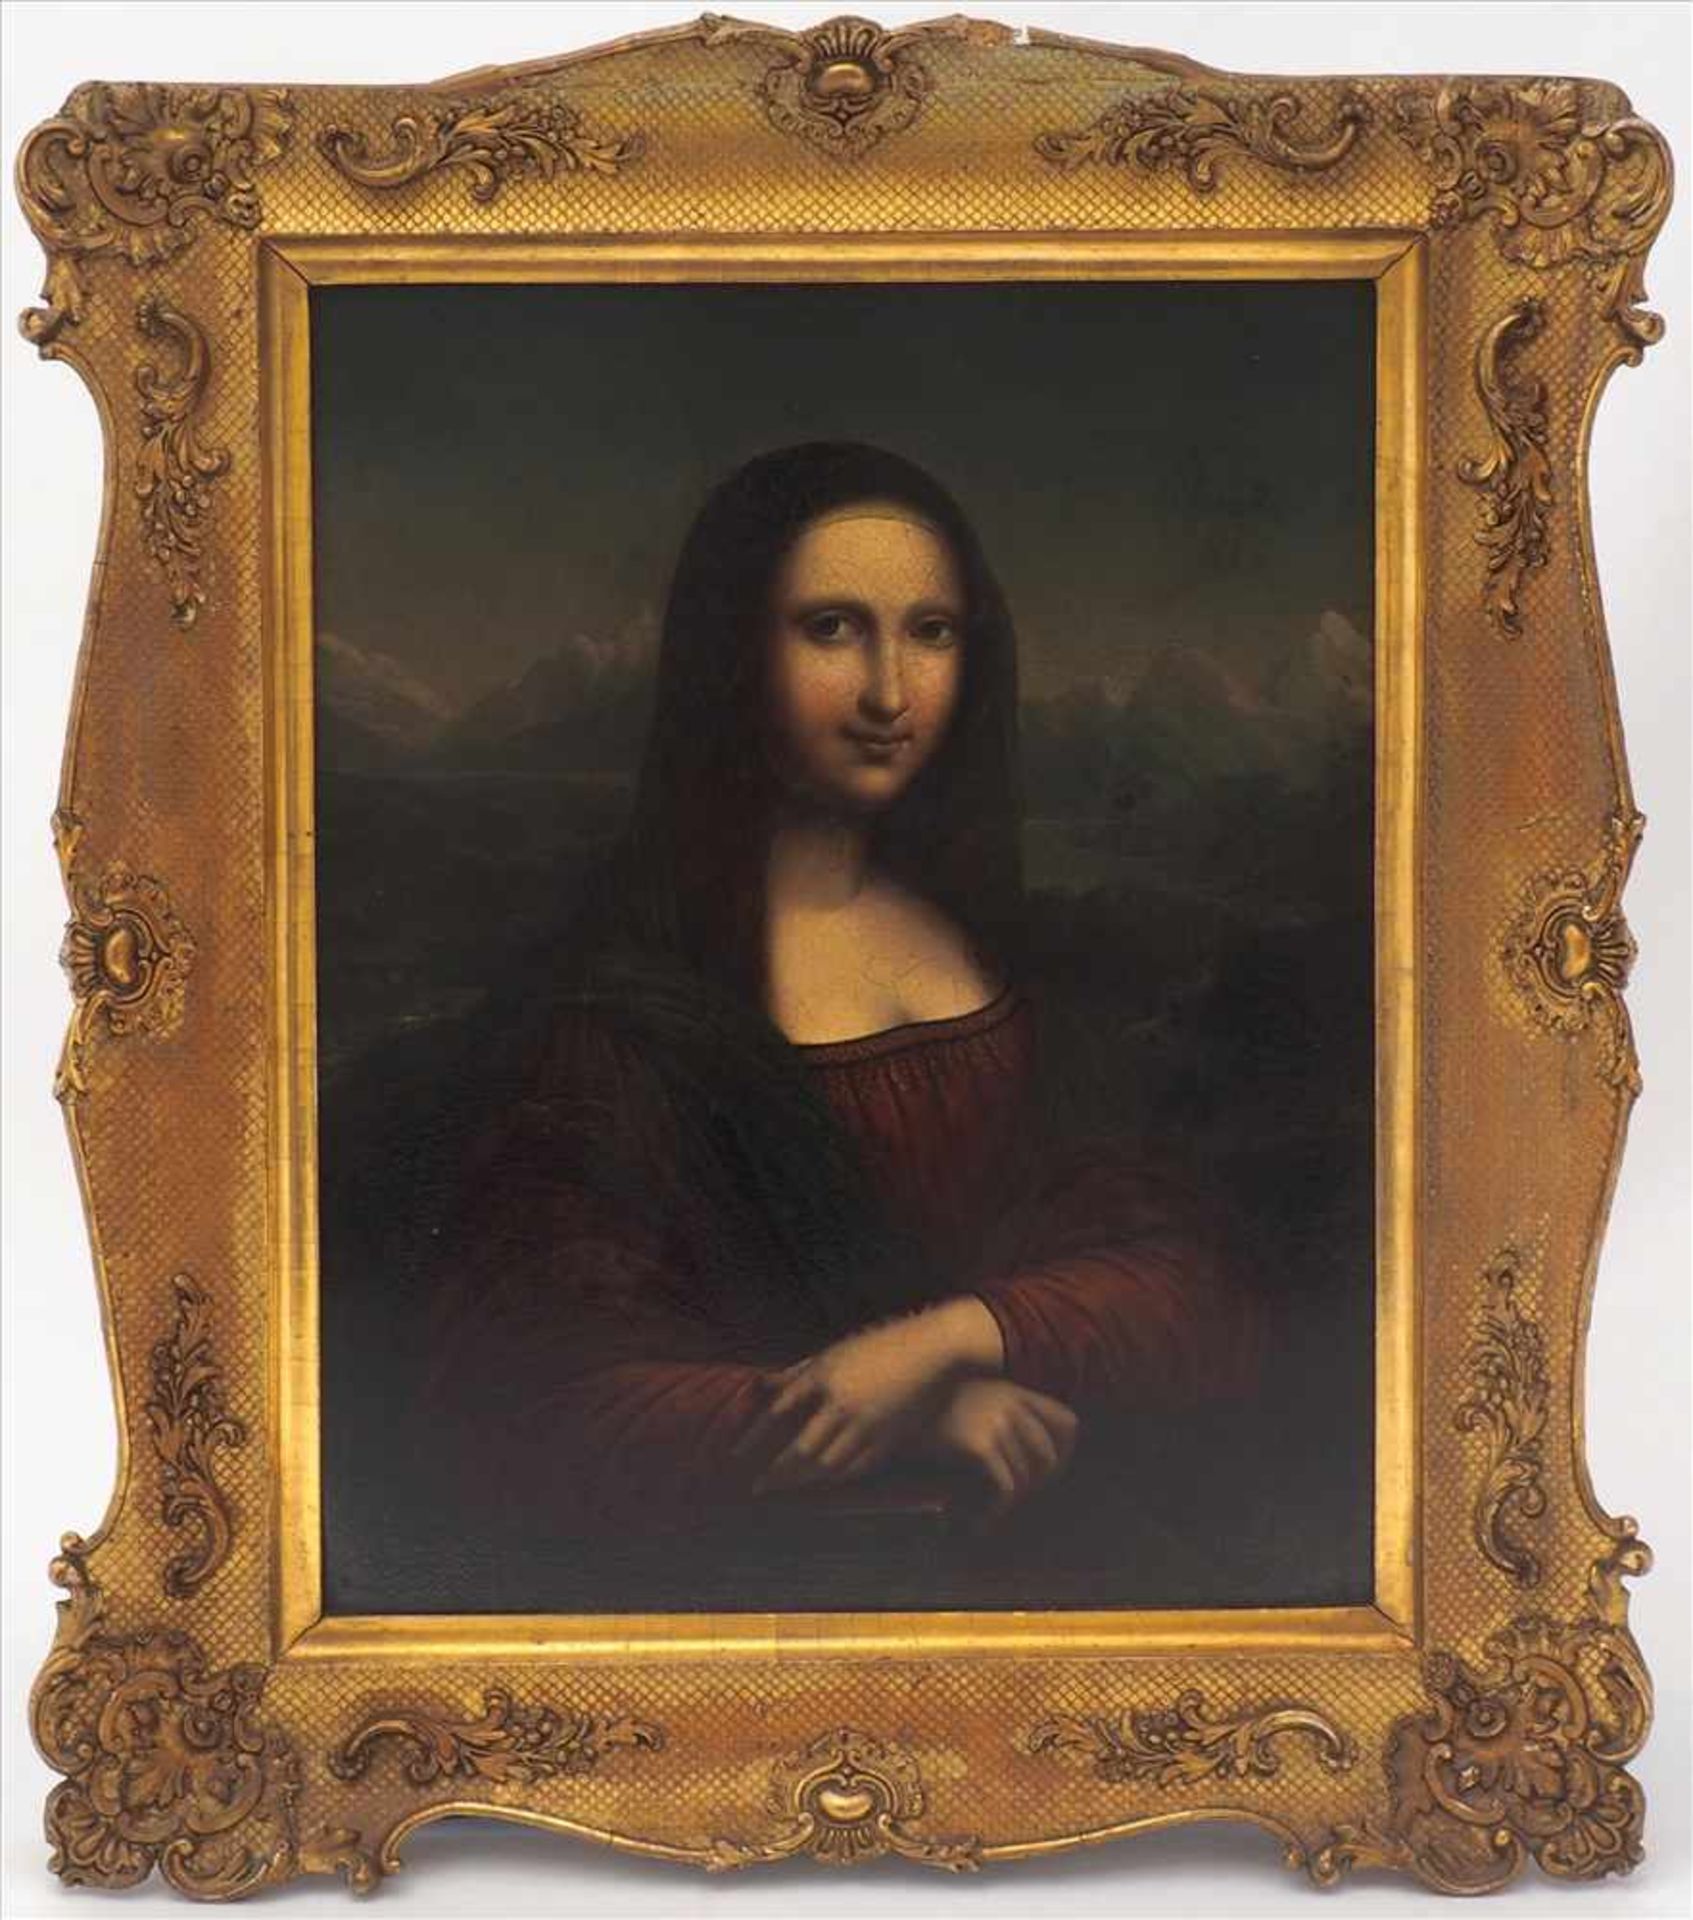 Da Vinci, LeonardoKopie nach. Mona Lisa. Öldruck auf Metallplatte. Größe ca. 36 x 28,5 cm, Rahmen - Bild 2 aus 6